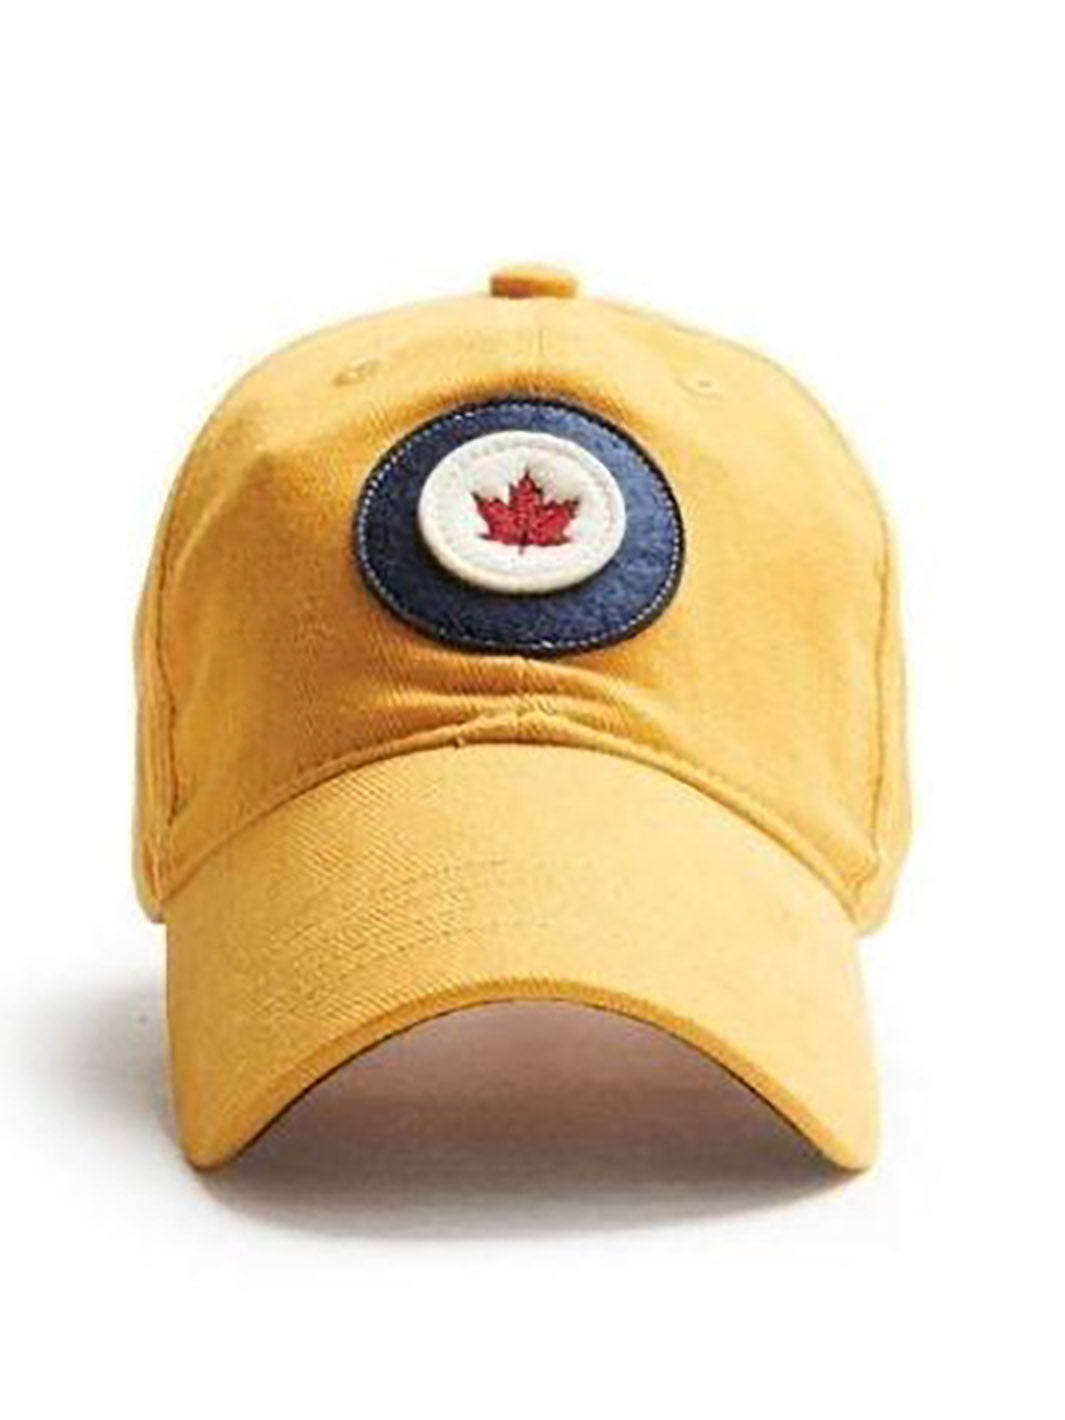 Casquette RCAF jaune avec logo